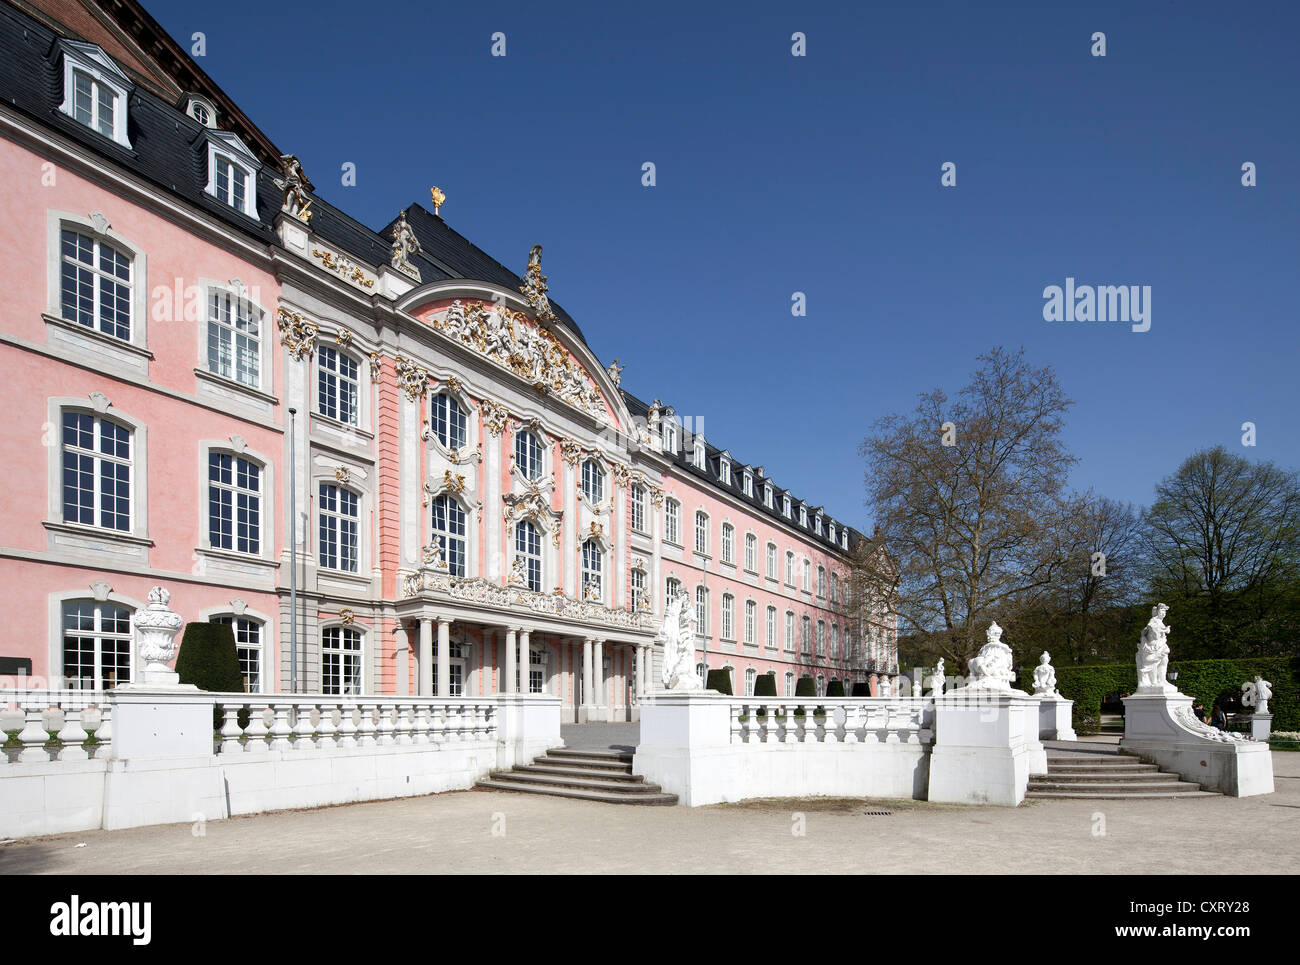 Palais électoral, immeuble de bureaux publics, Trèves, Rhénanie-Palatinat, Allemagne, Europe, PublicGround Banque D'Images